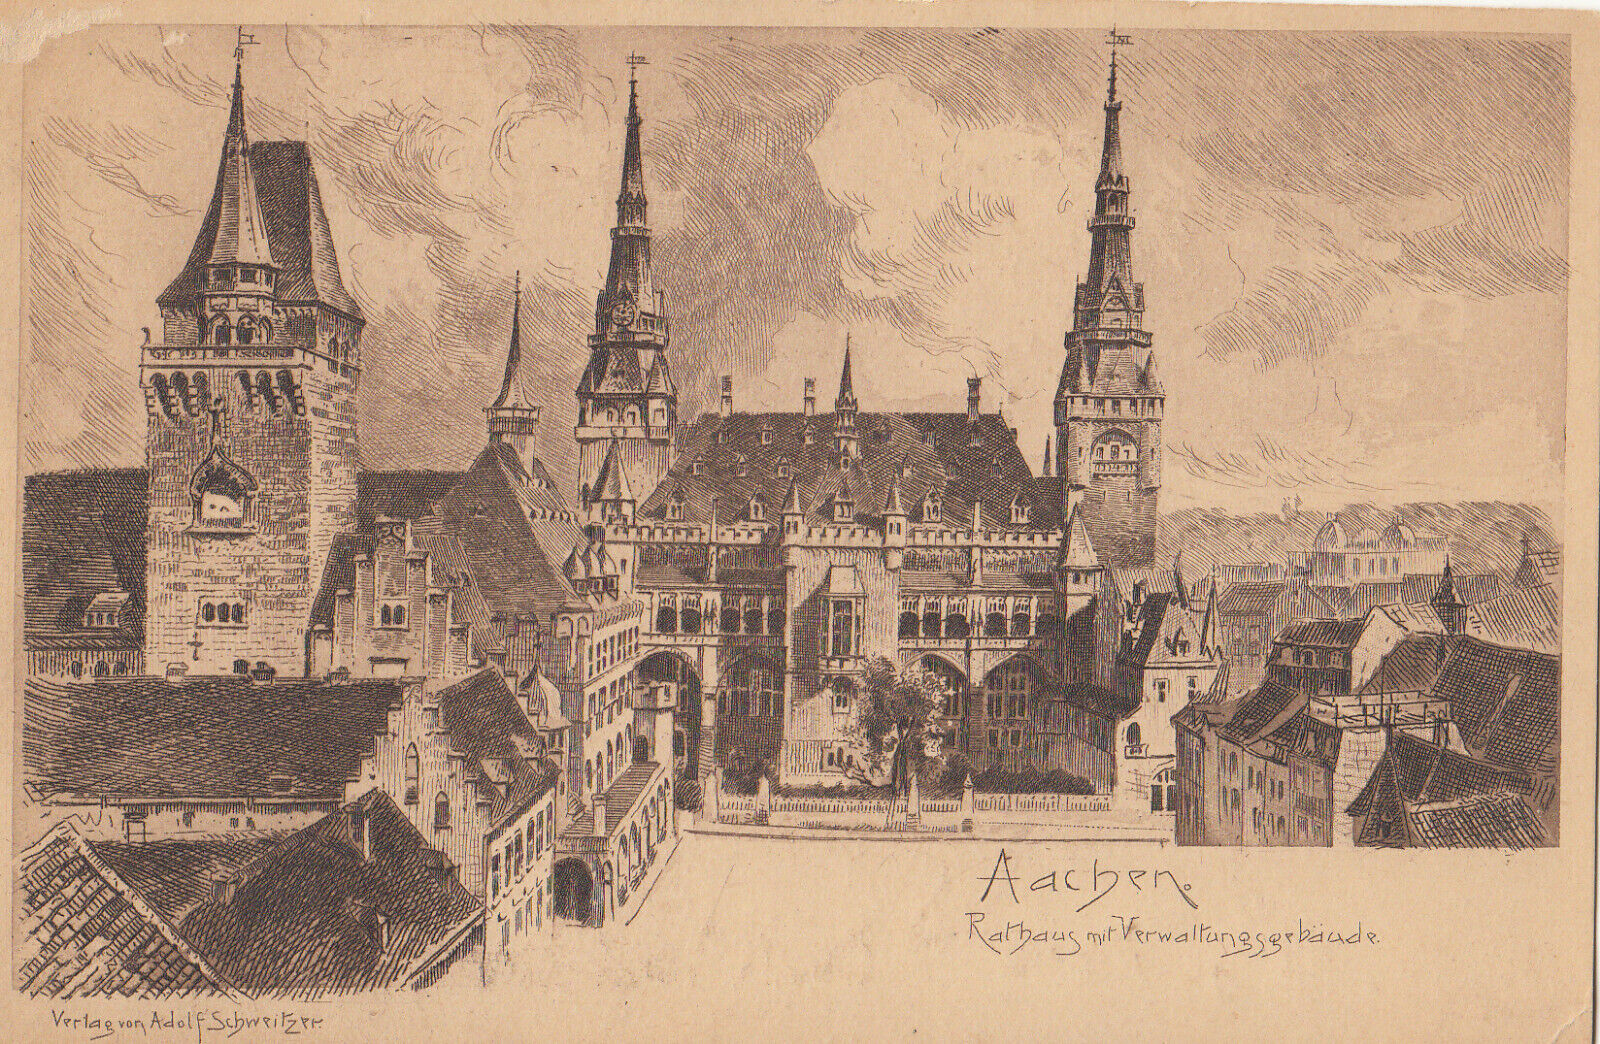 Aachen Rathaus mit Verwaltungsgebaude Germany Old Undivided back Postcard Unused